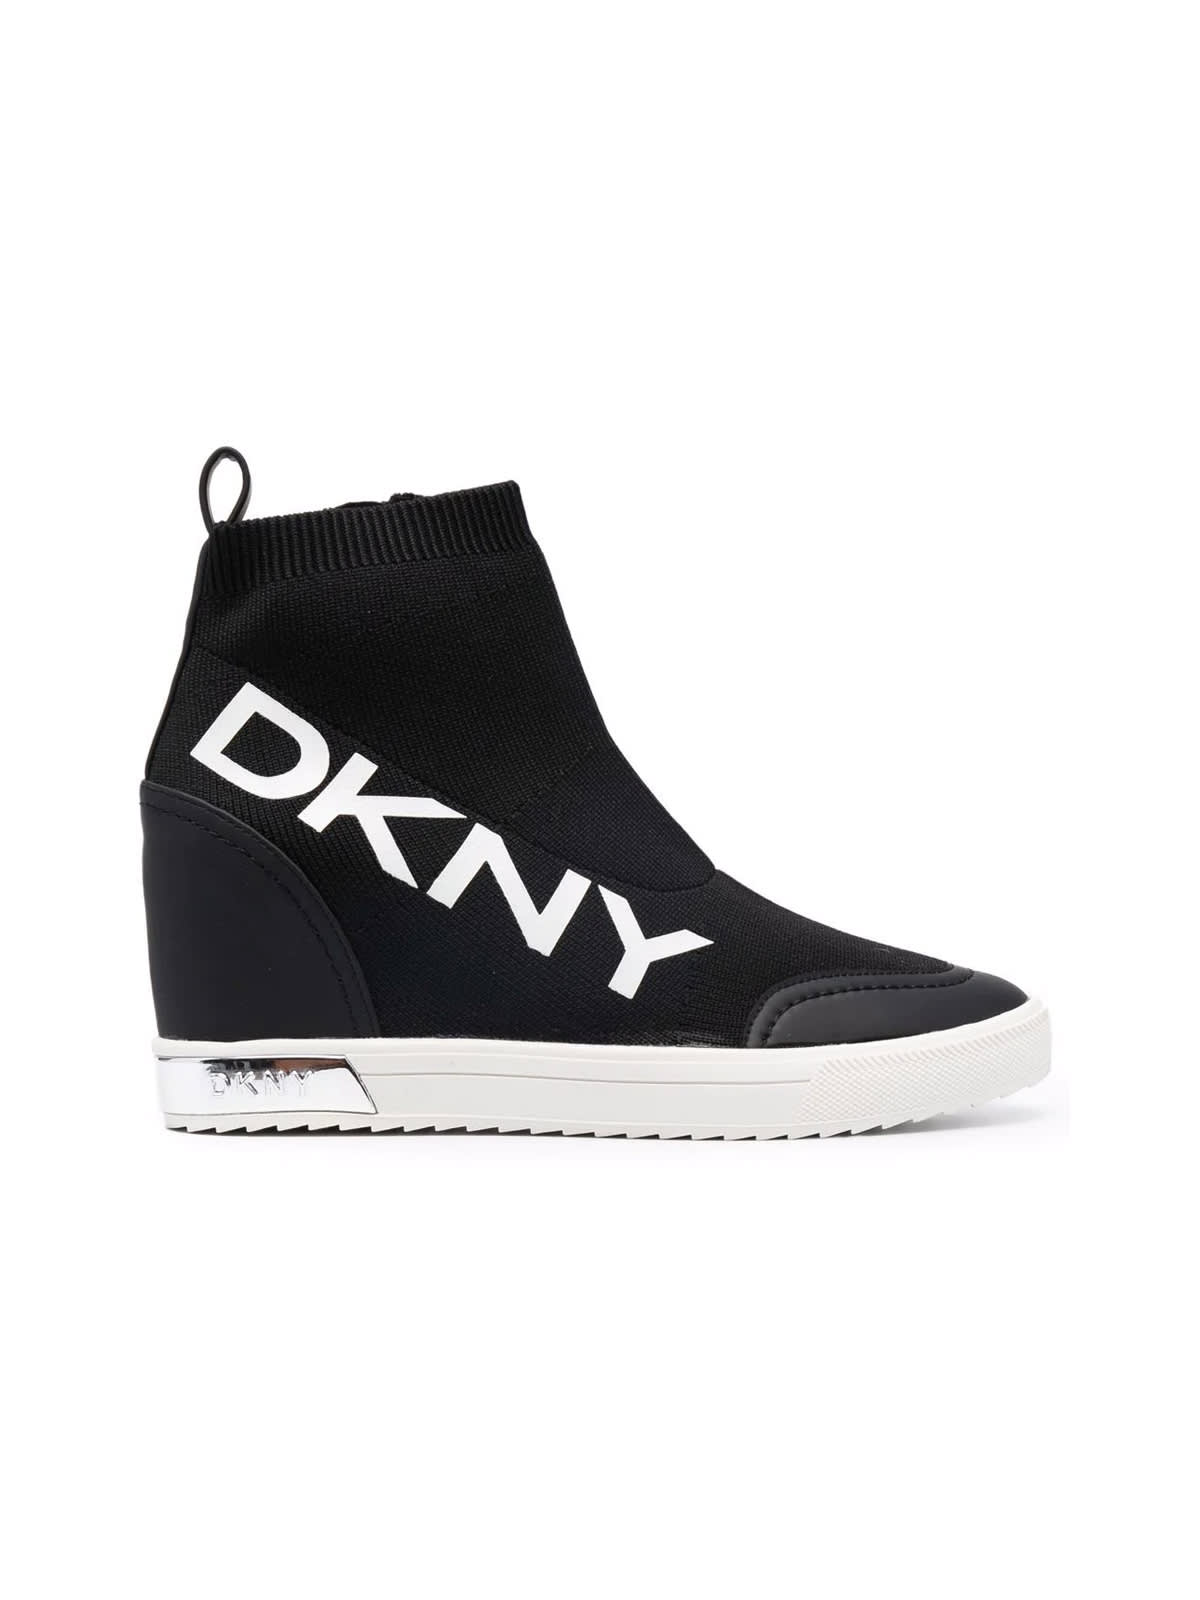 DKNY Catelin Wedge Sneaker 65mm